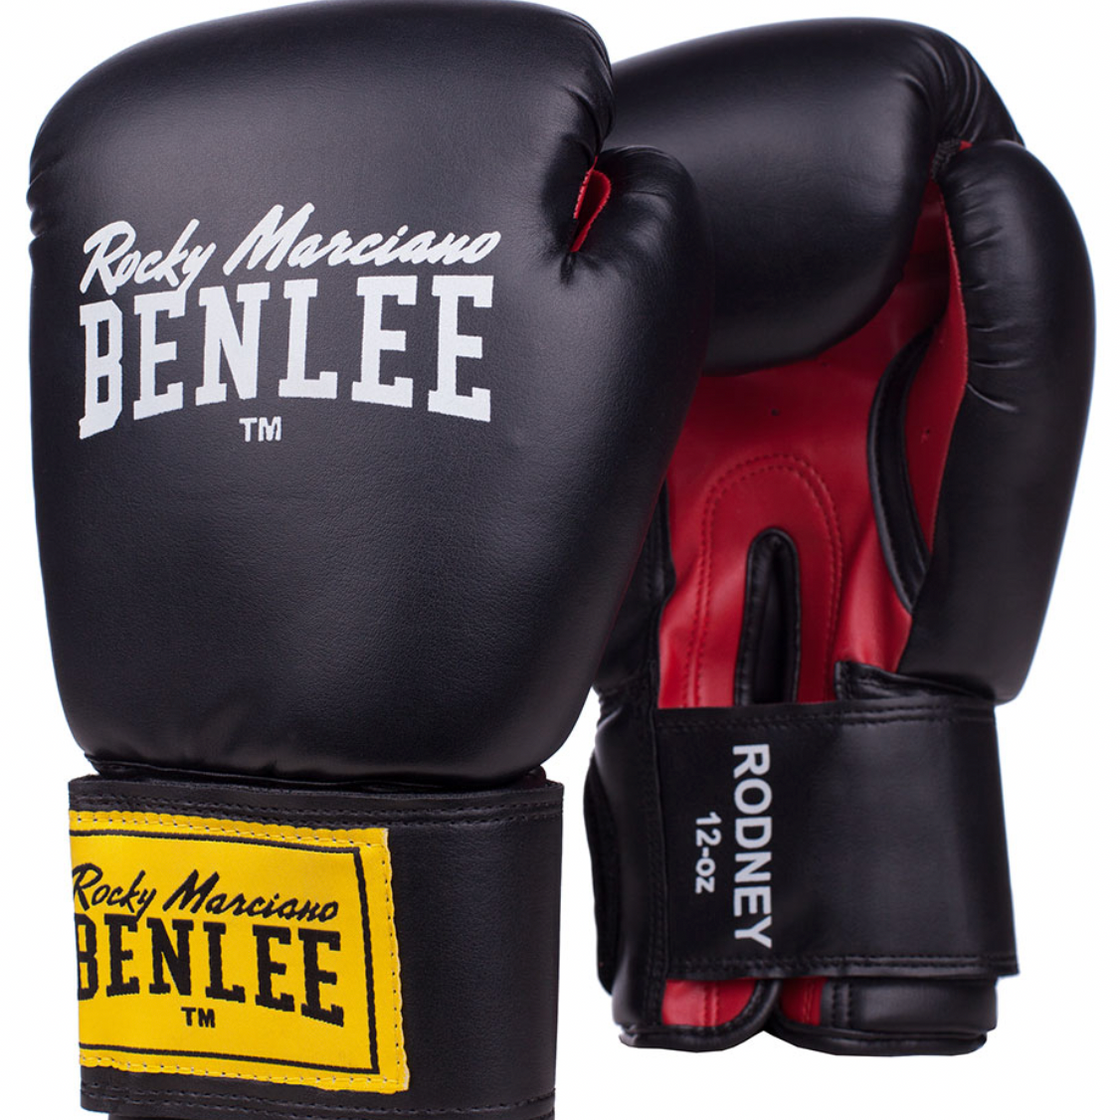 Benlee boxing gloves "Rodney"